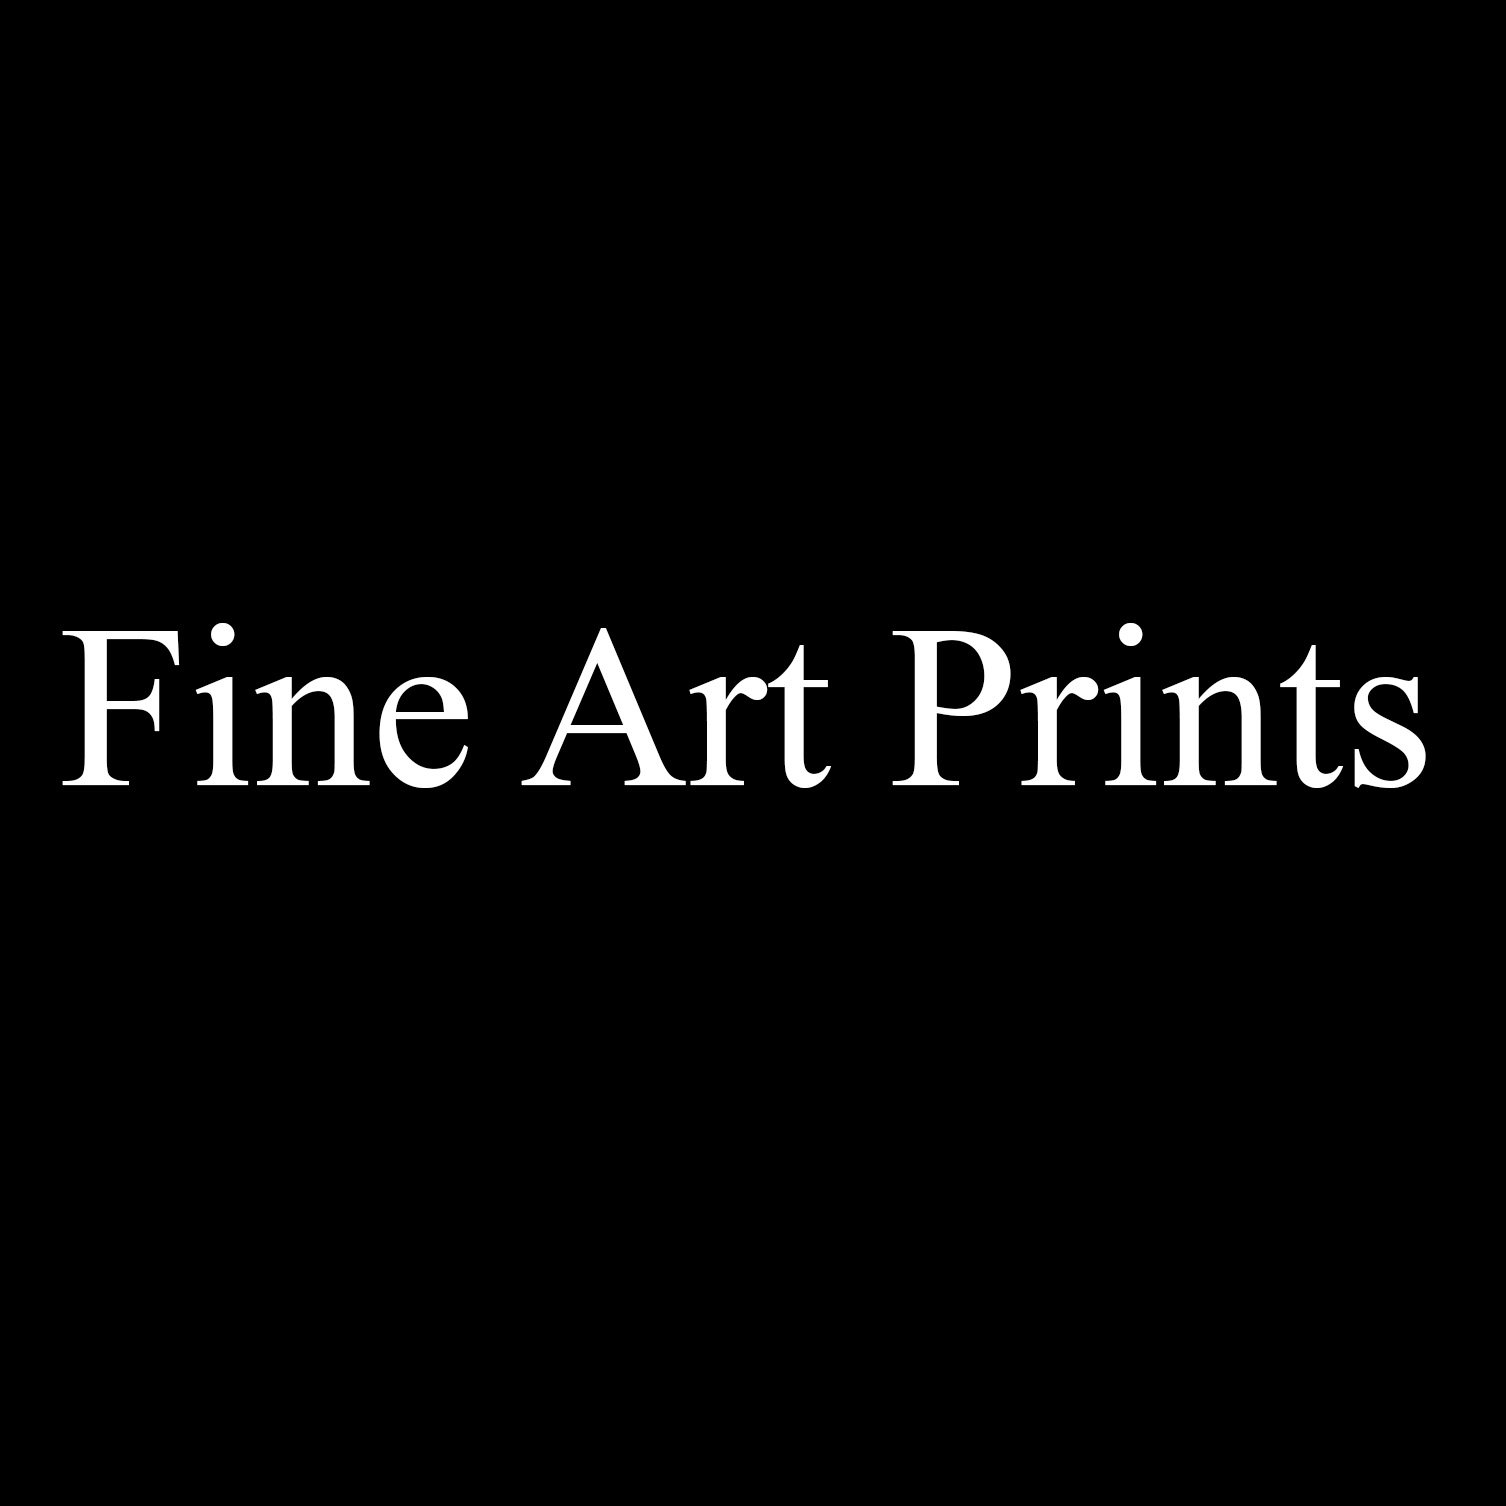 Fine Art Prints.jpg